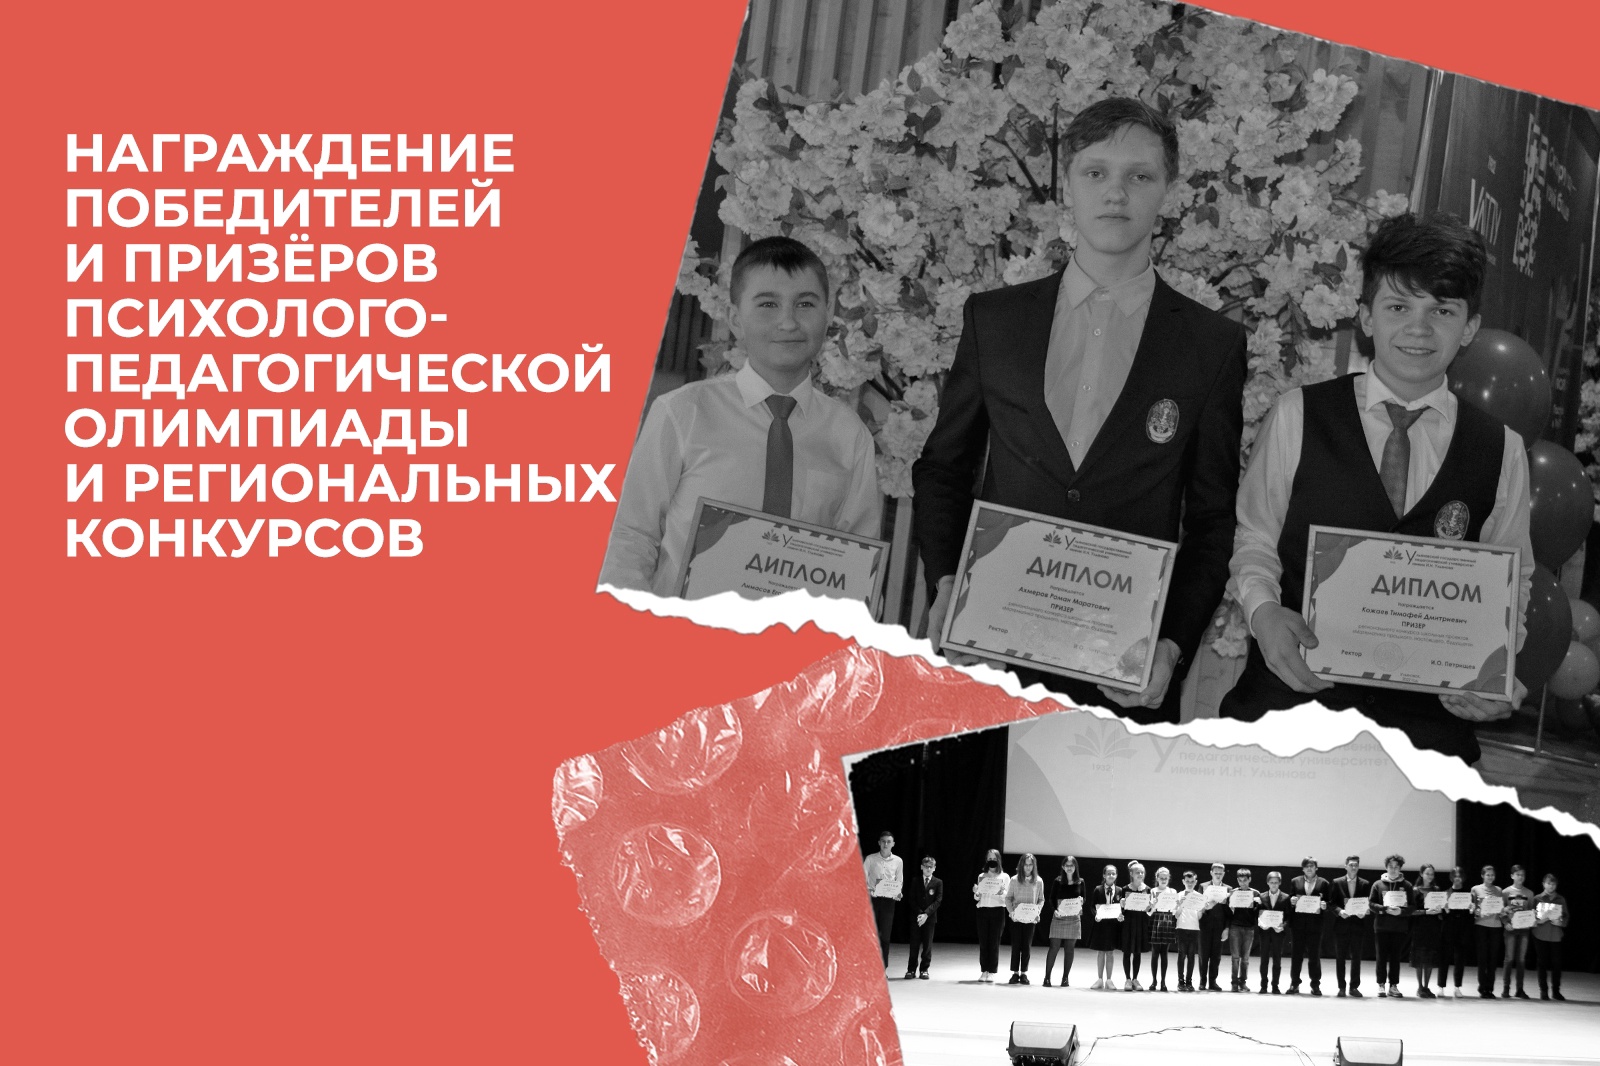 Награждение победителей и призеров Психолого-педагогической олимпиады имени И.Н. Ульянова